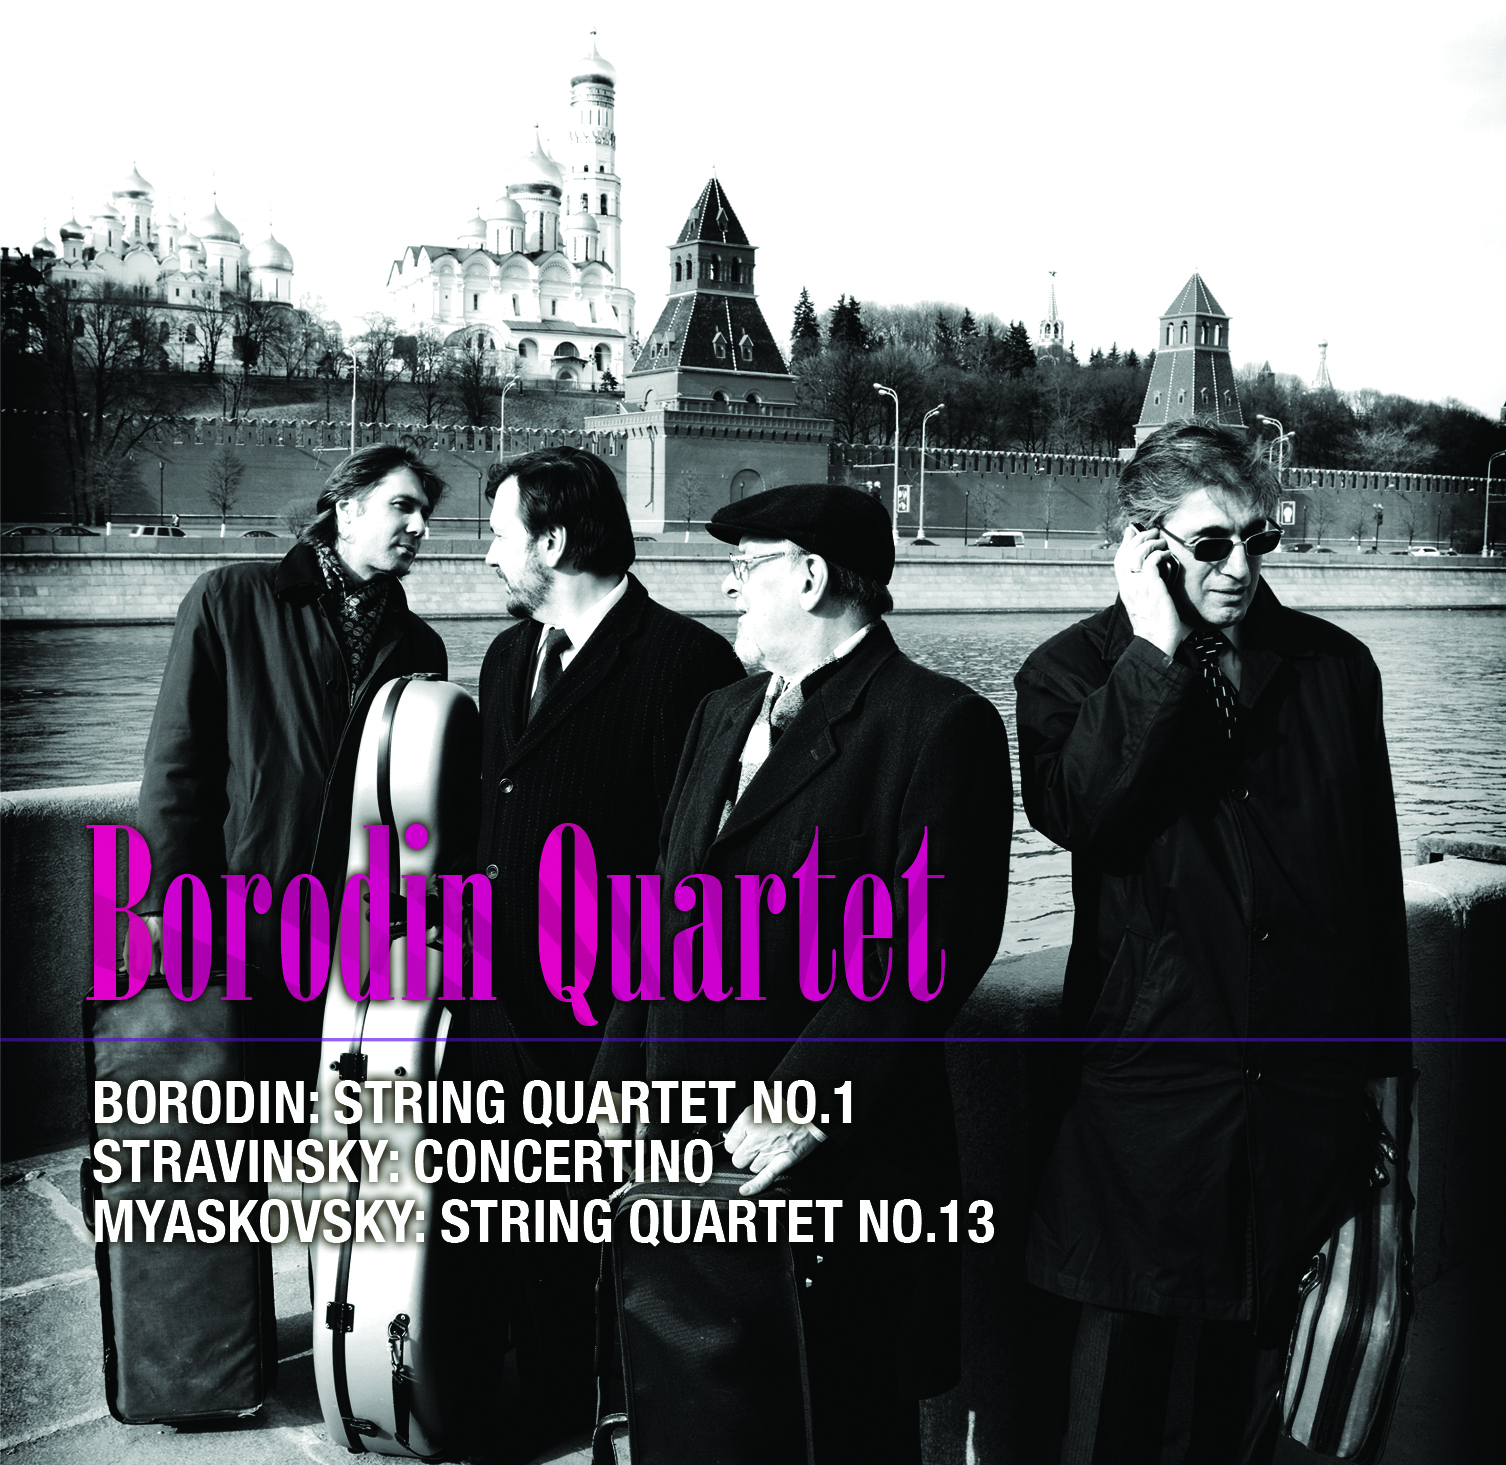 Borodin: Quartet No. 1 / Stravinsky: Concertino / Myaskovsky: Quartet No. 16